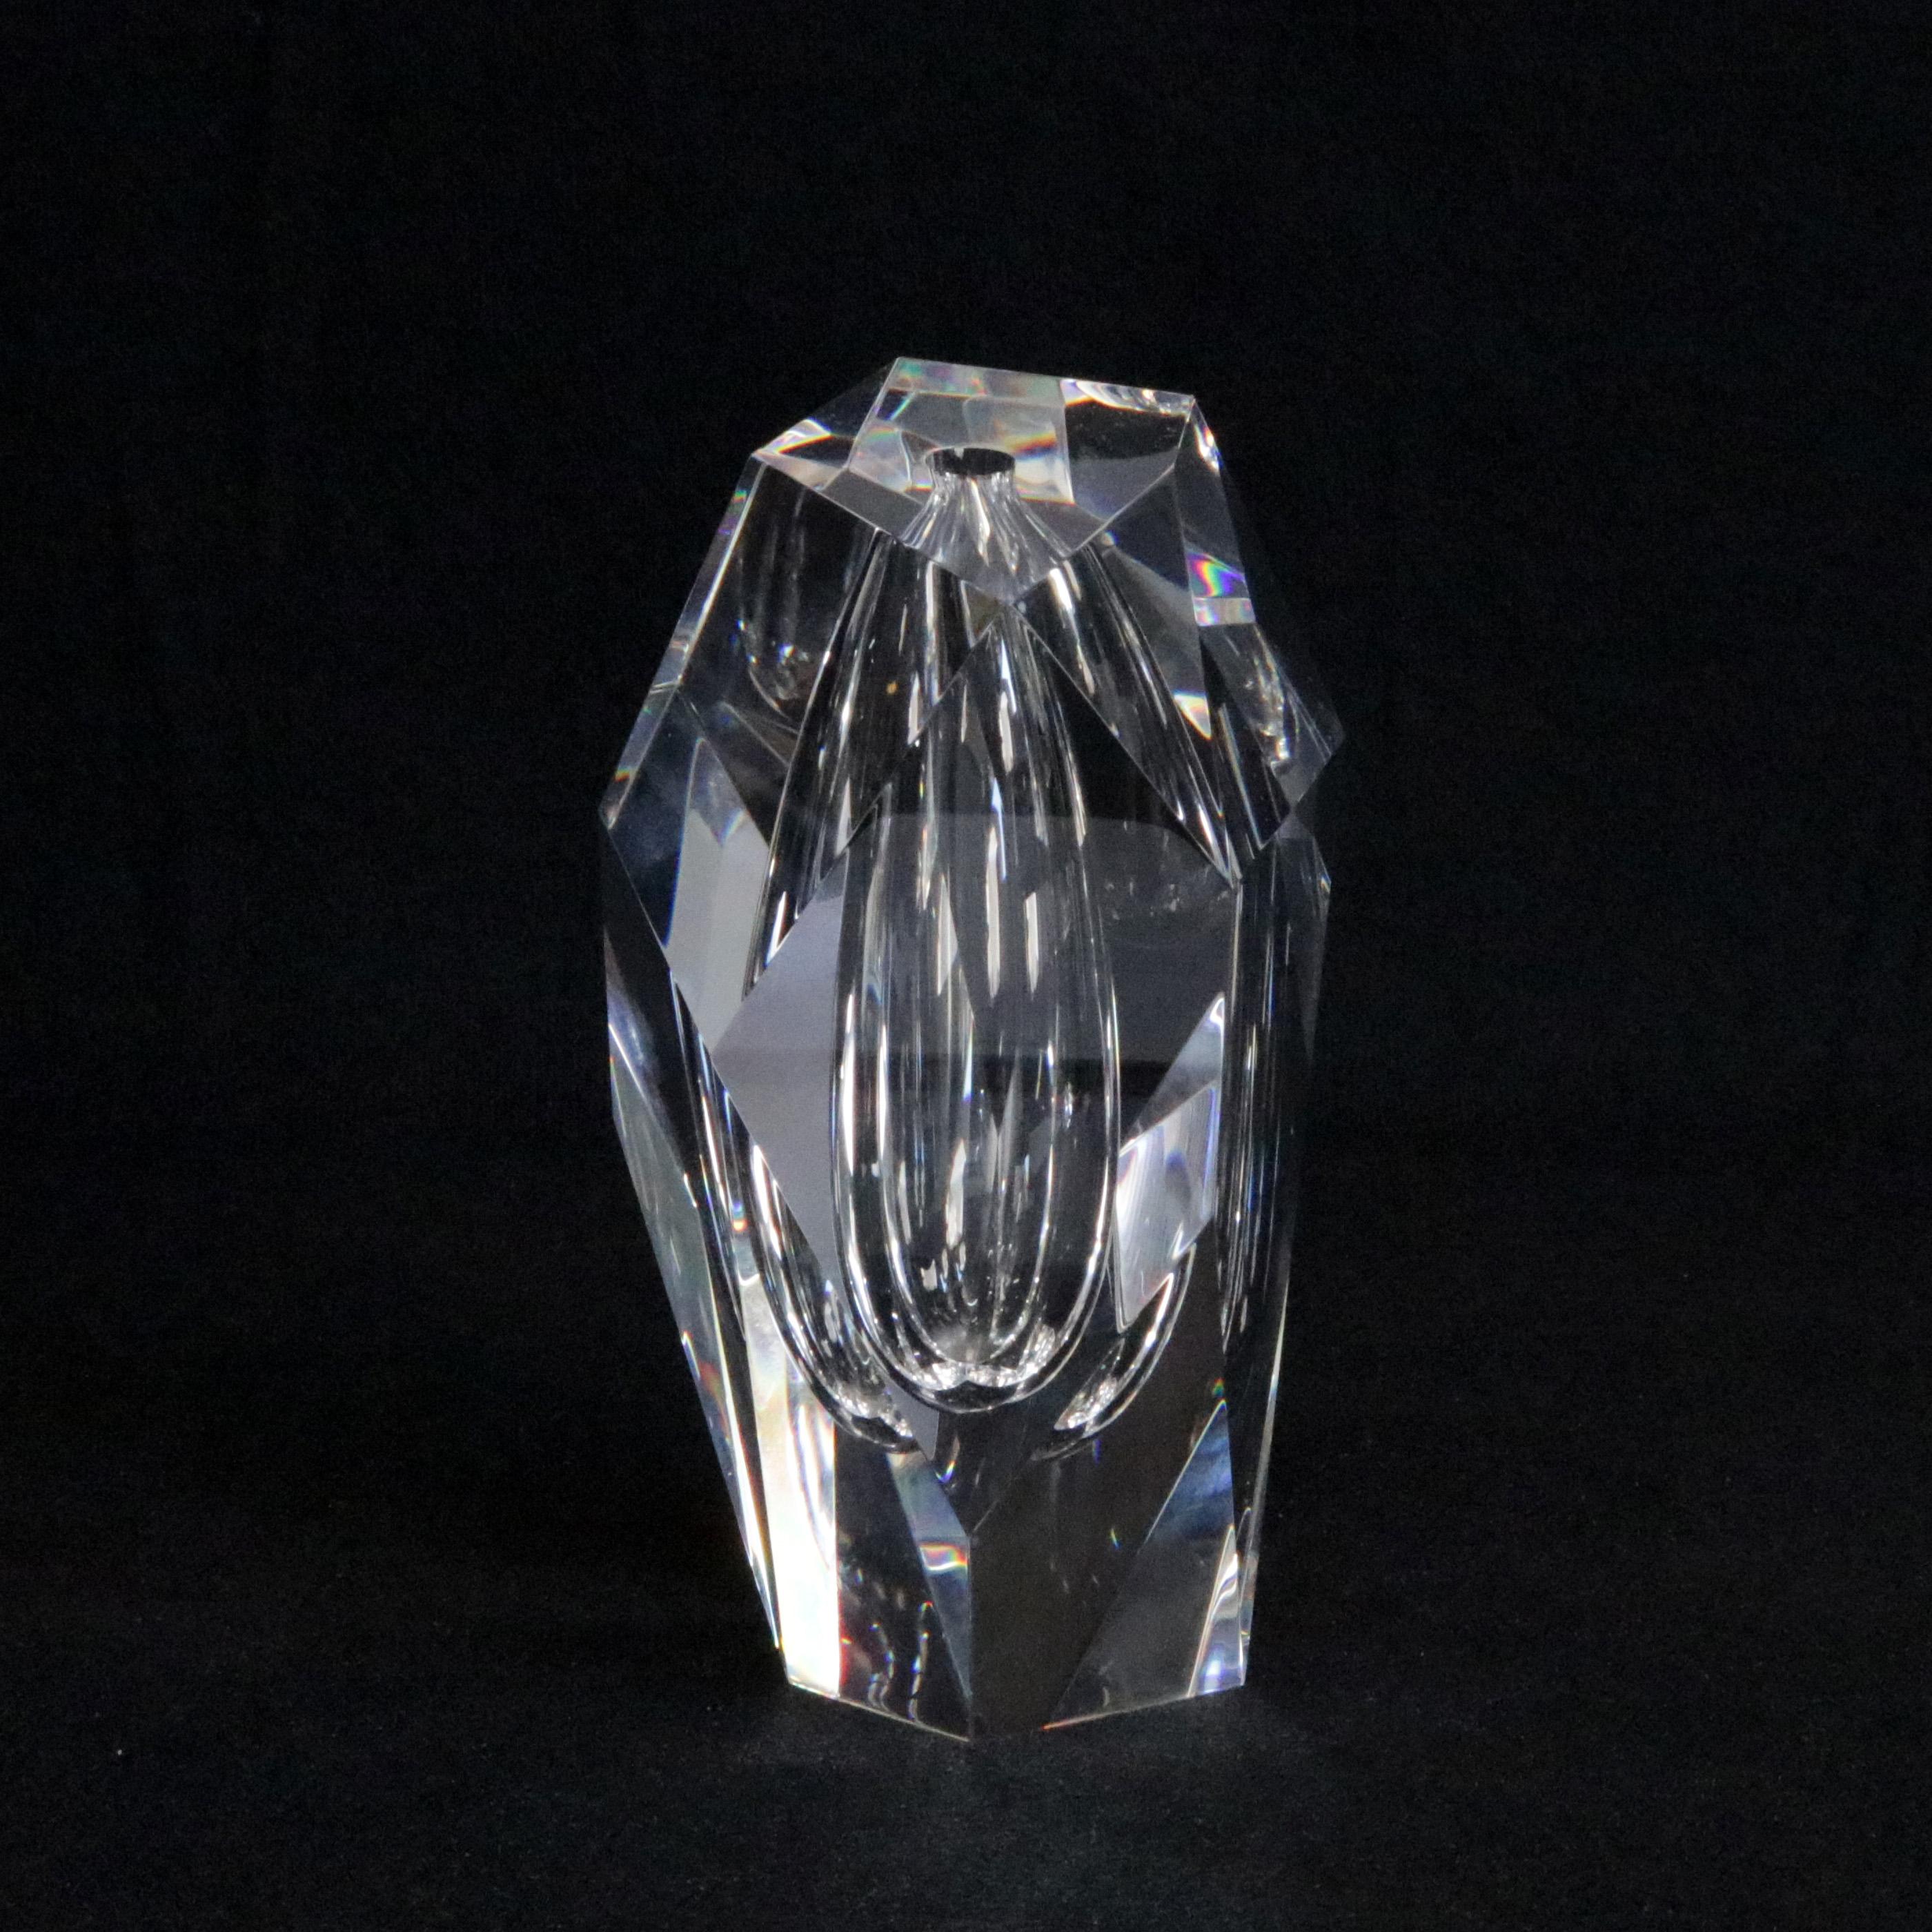 Steuben Signed Art Glass Modernist Bud Vase, Signed 2